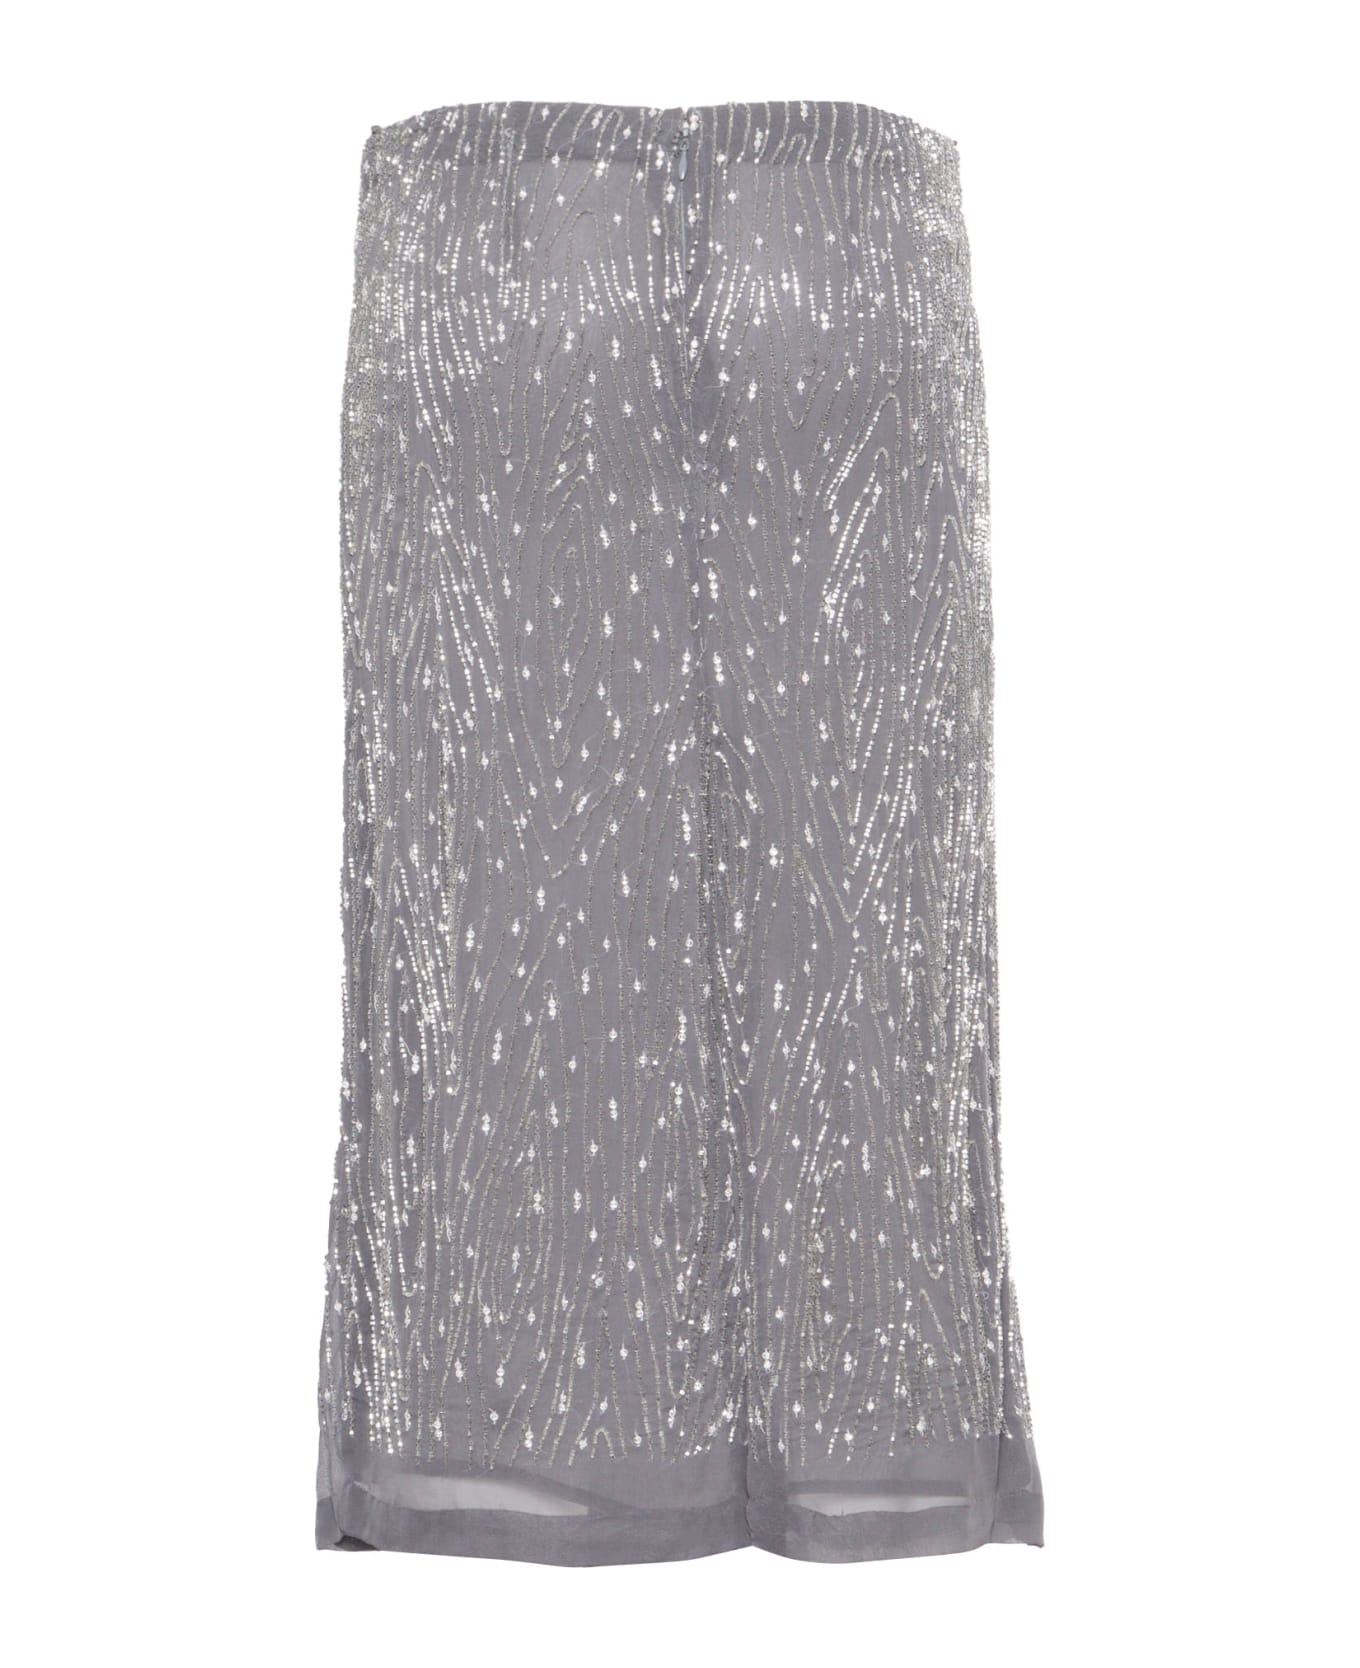 Parosh Gray Skirt With Paillettes - Dark Grey スカート